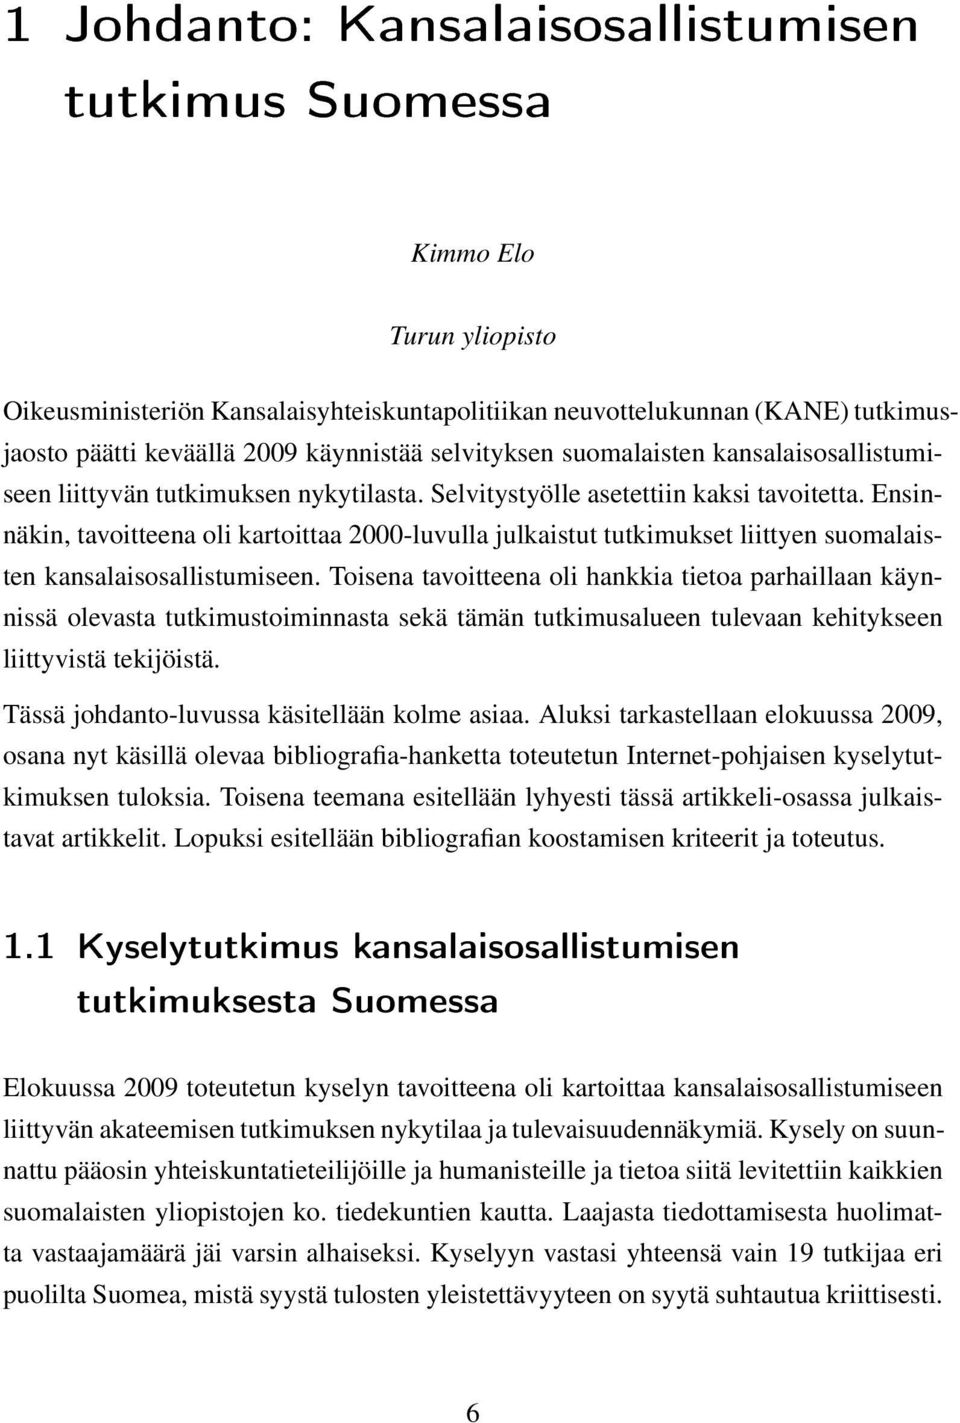 Ensinnäkin, tavoitteena oli kartoittaa 2000-luvulla julkaistut tutkimukset liittyen suomalaisten kansalaisosallistumiseen.